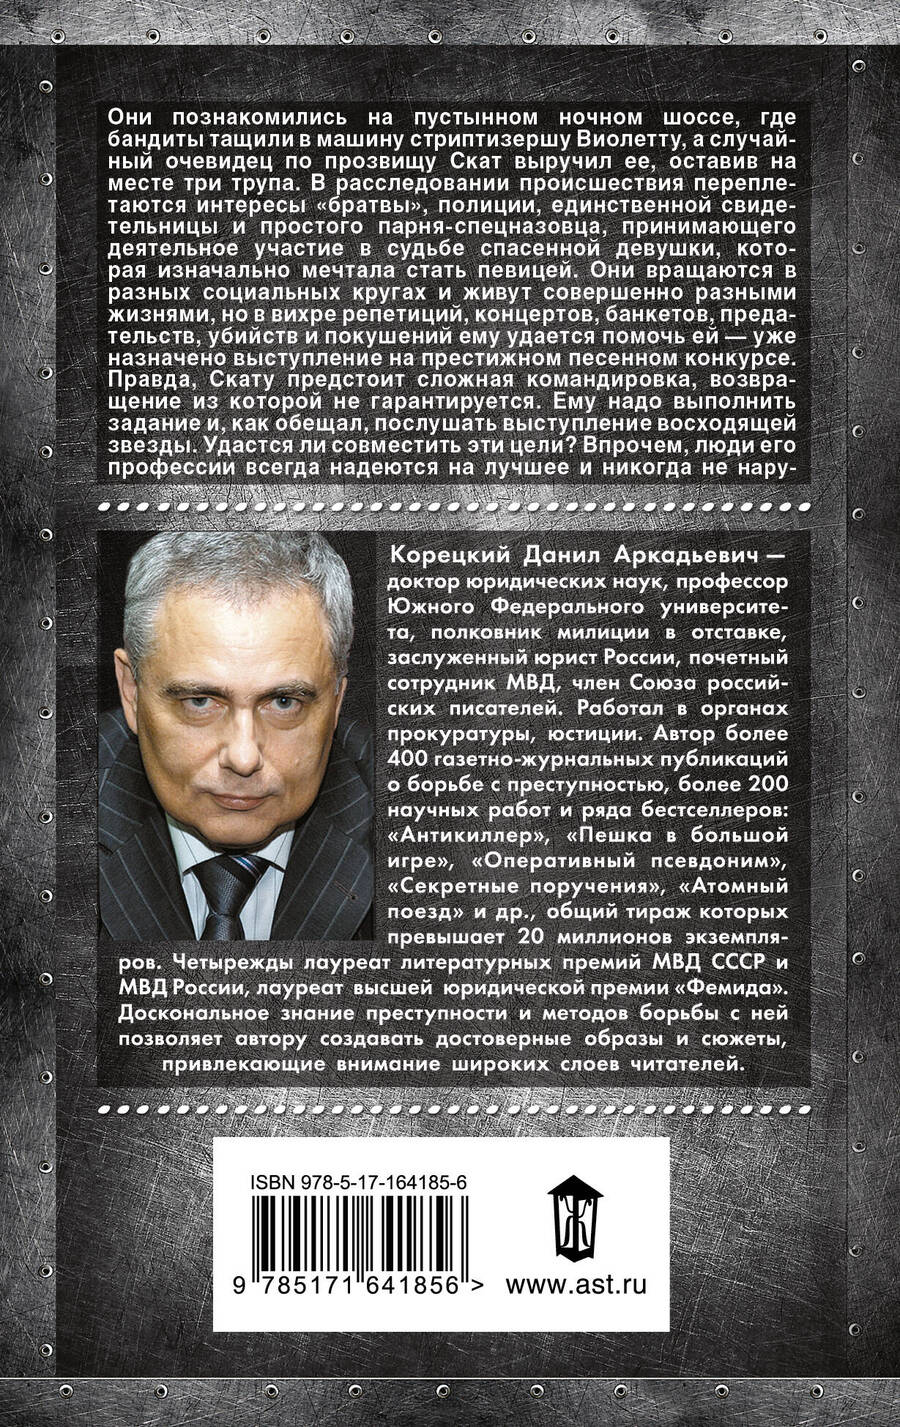 Обложка книги "Данил Корецкий: Возвращение не гарантируется"